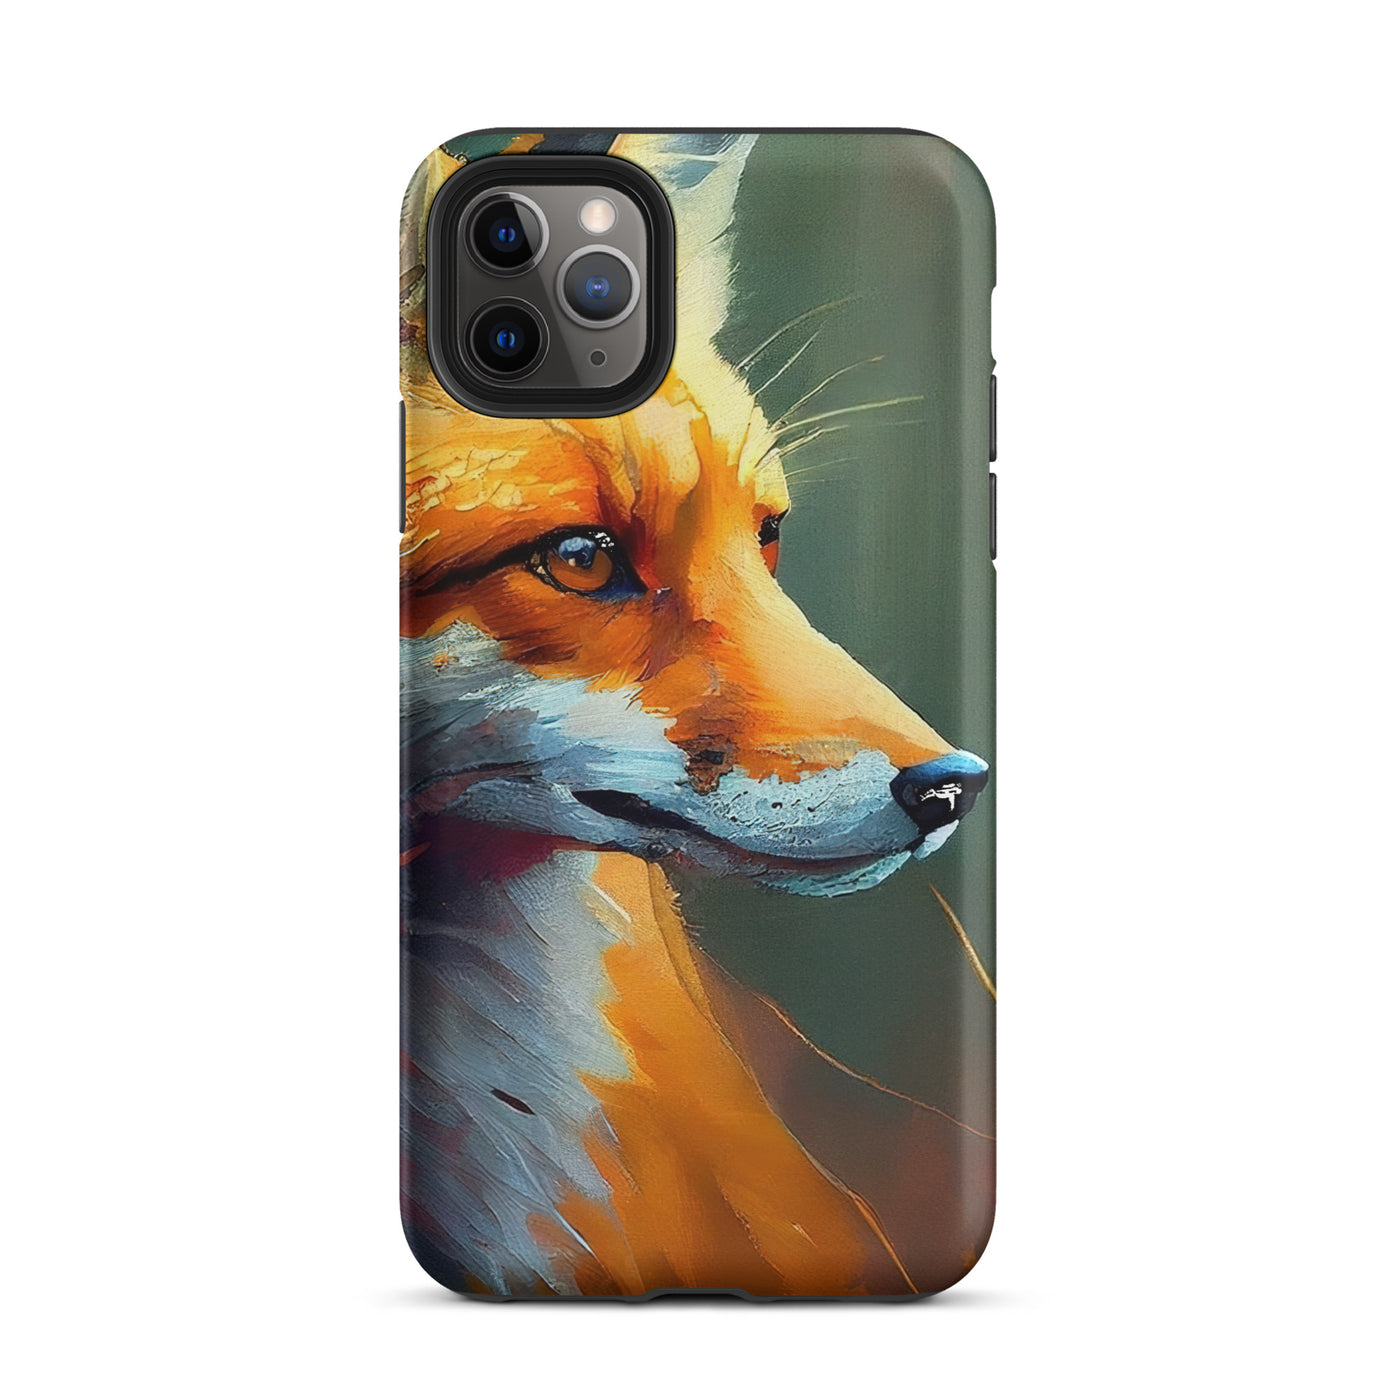 Fuchs - Ölmalerei - Schönes Kunstwerk - iPhone Schutzhülle (robust) camping xxx iPhone 11 Pro Max